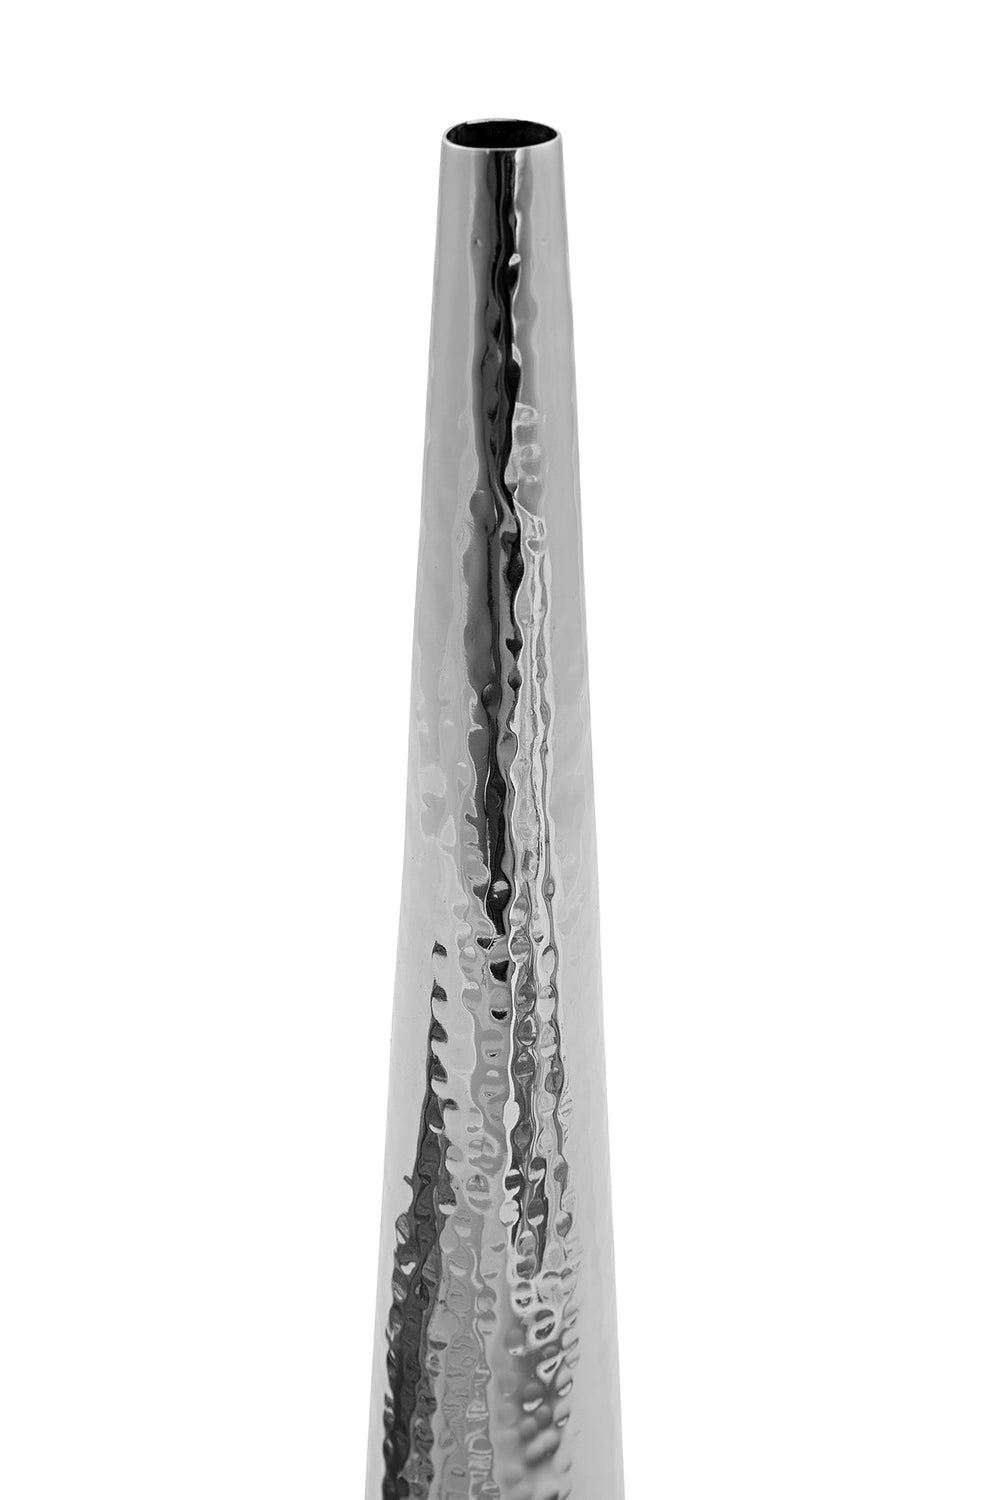 CUBA - Vase gehämmert - Edelstahl 31cm, Fink-FINK-157000